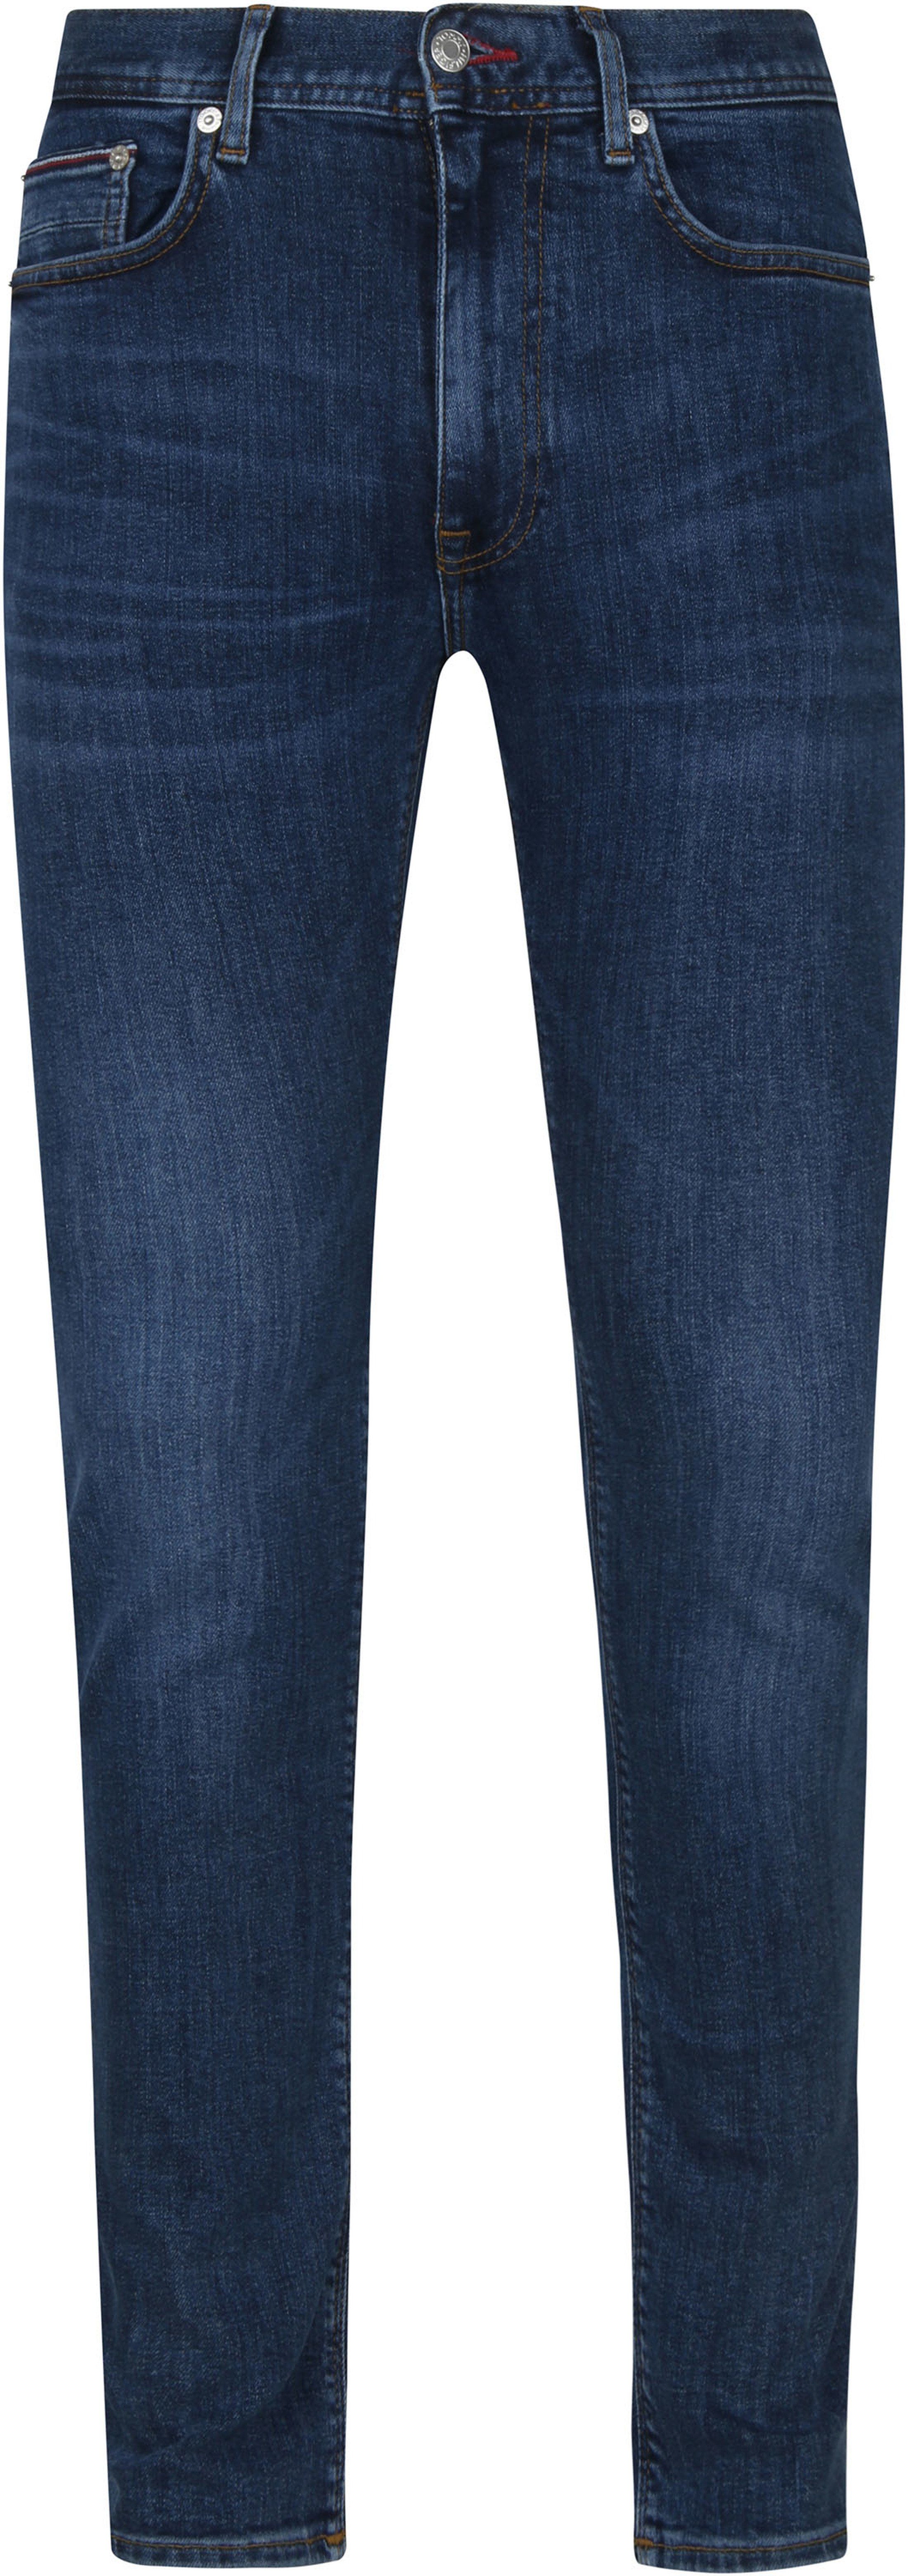 Tommy Hilfiger Jeans Bleecker Indigo Blue Dark Blue size W 31